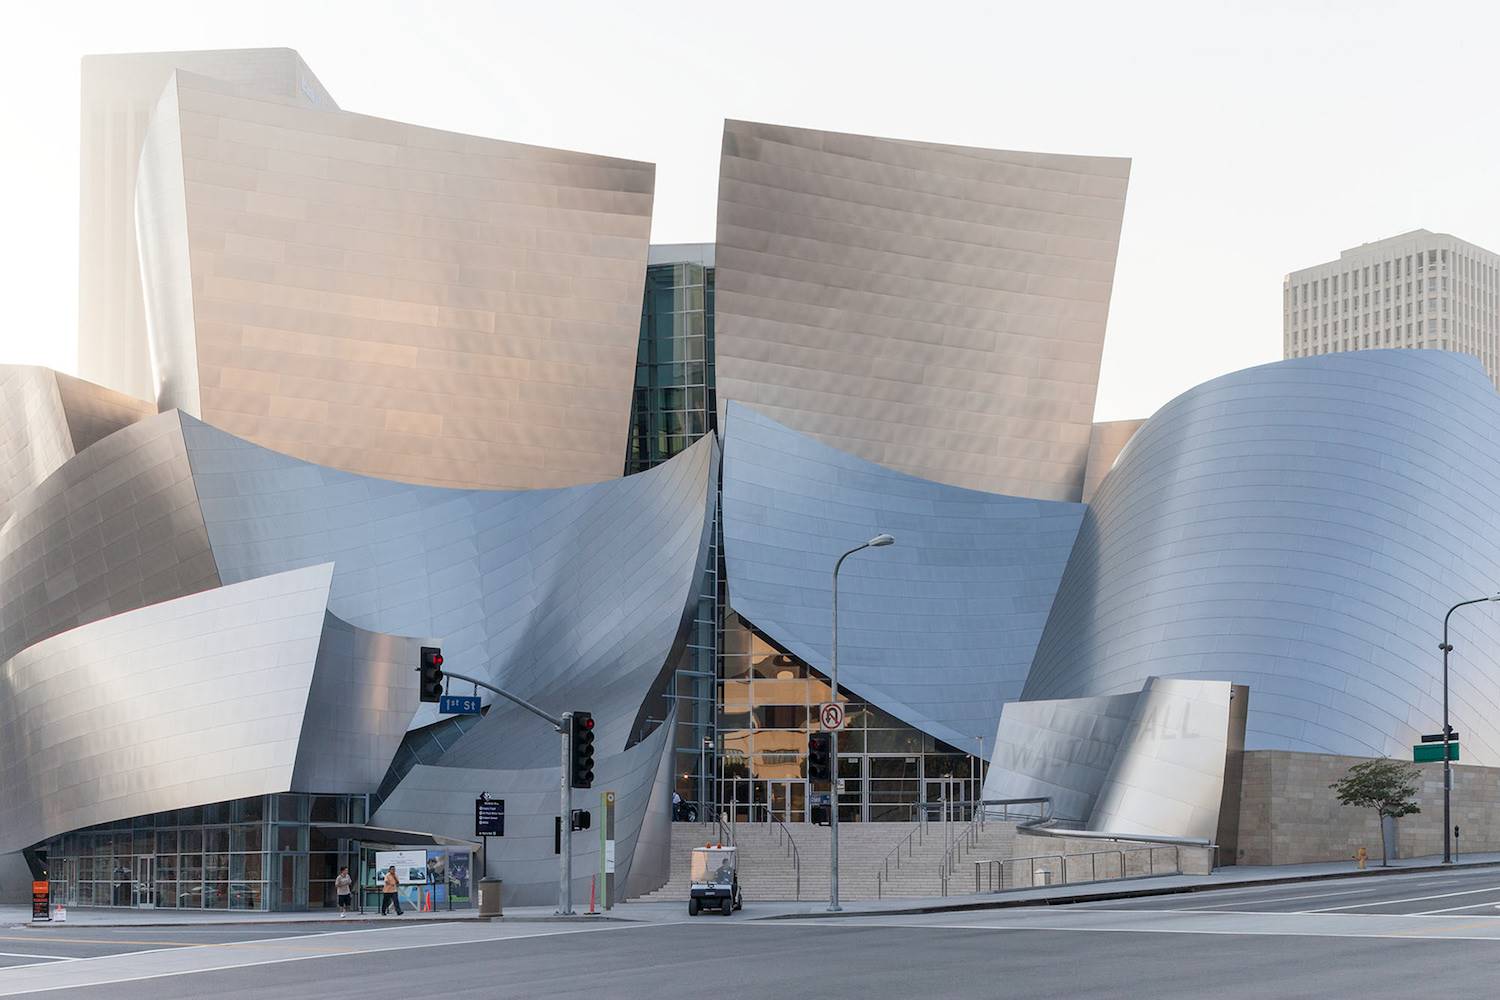 La parte más conocida del Walt Disney Concert Hall en Los Ángeles (2003), es su fachada, muy parecida a la del museo Guggenheim de Bilbao. Frank Gehry